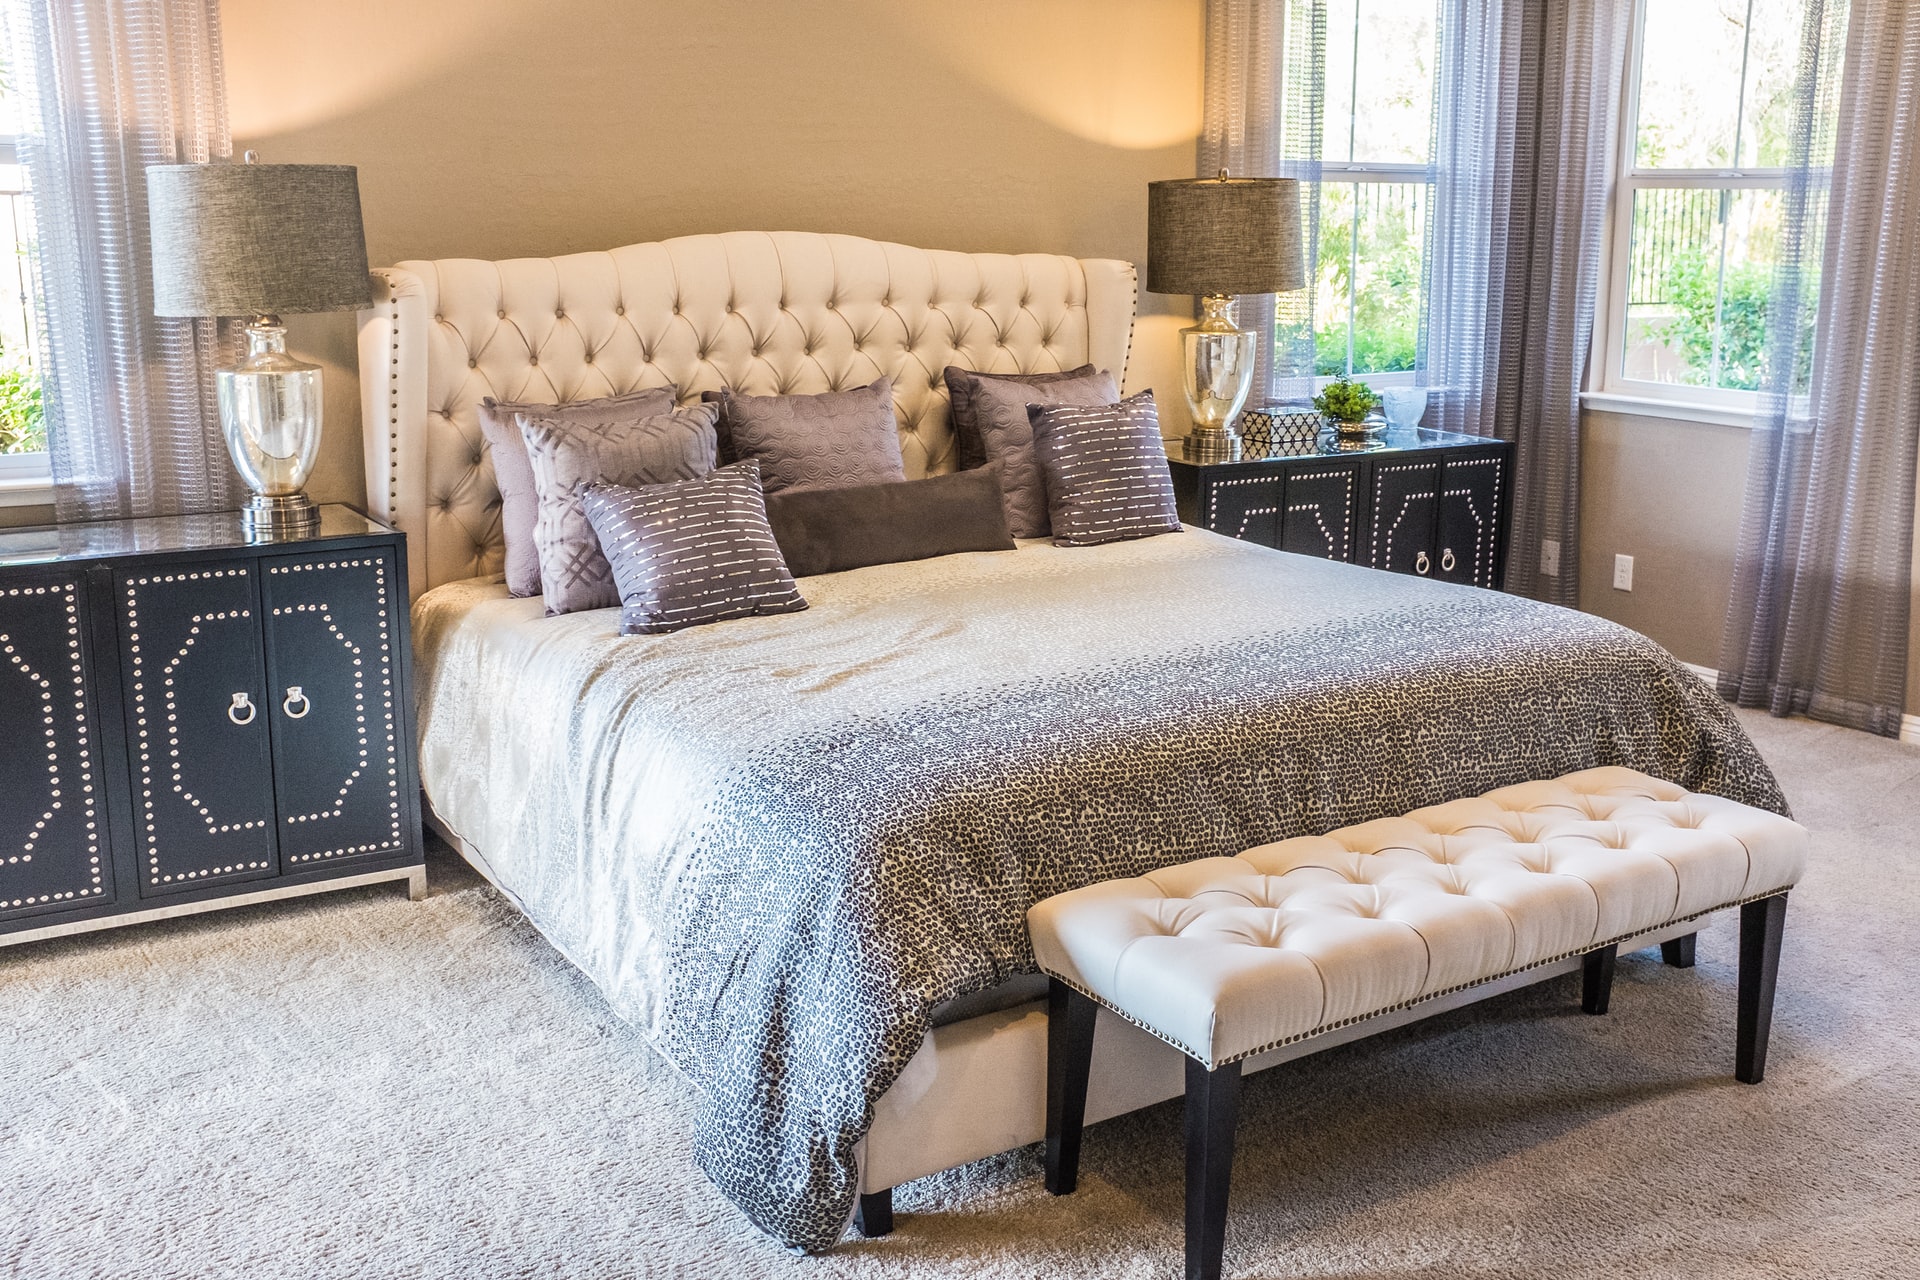 Łóżko tapicerowane w centrum sypialni – TOP inspiracje